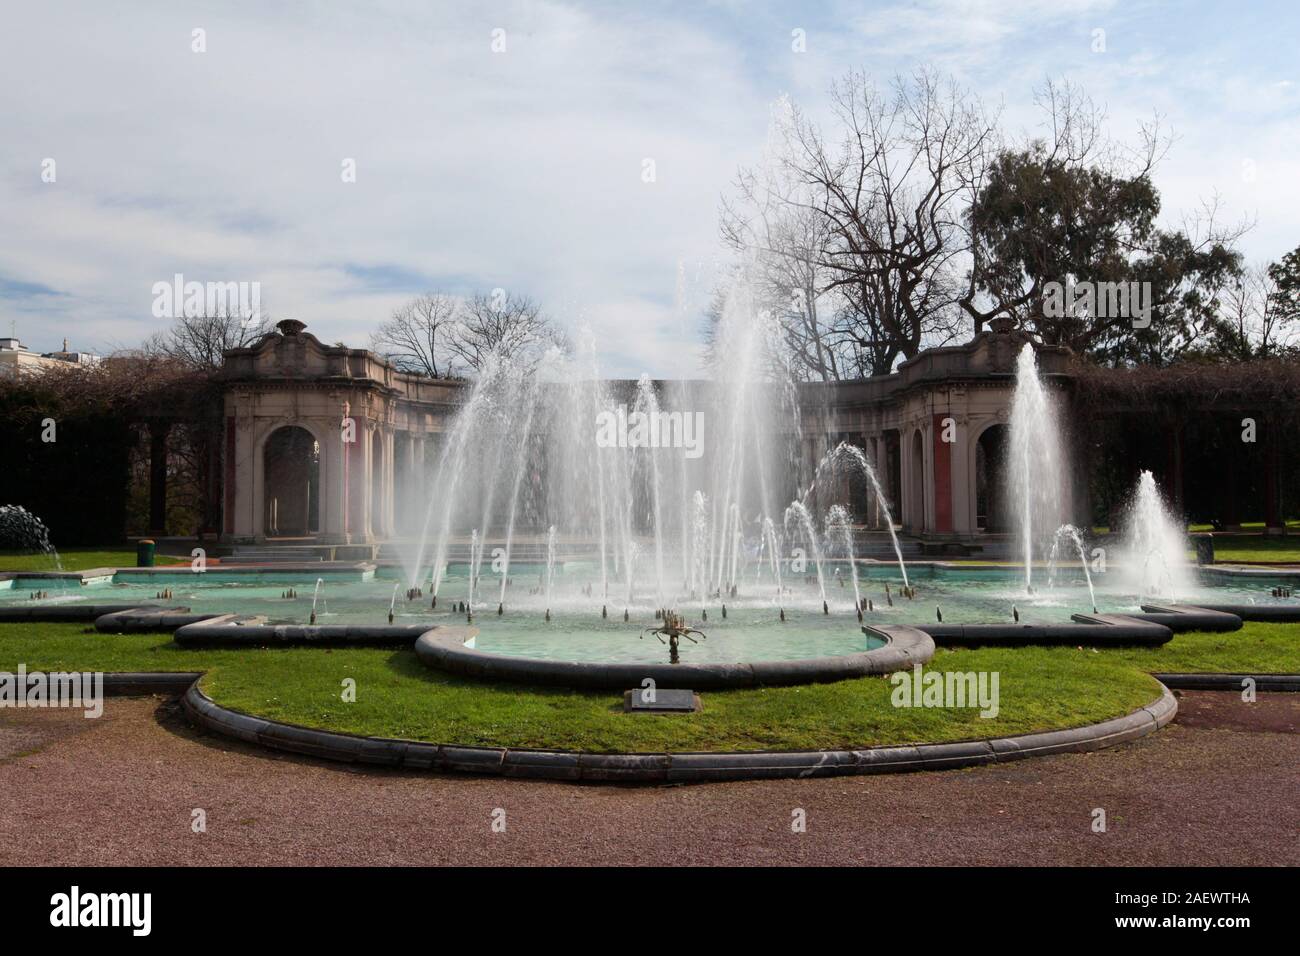 Bilbao, Spain - 18 February 2013: Fountain of Parque de Doa Casilda Stock Photo